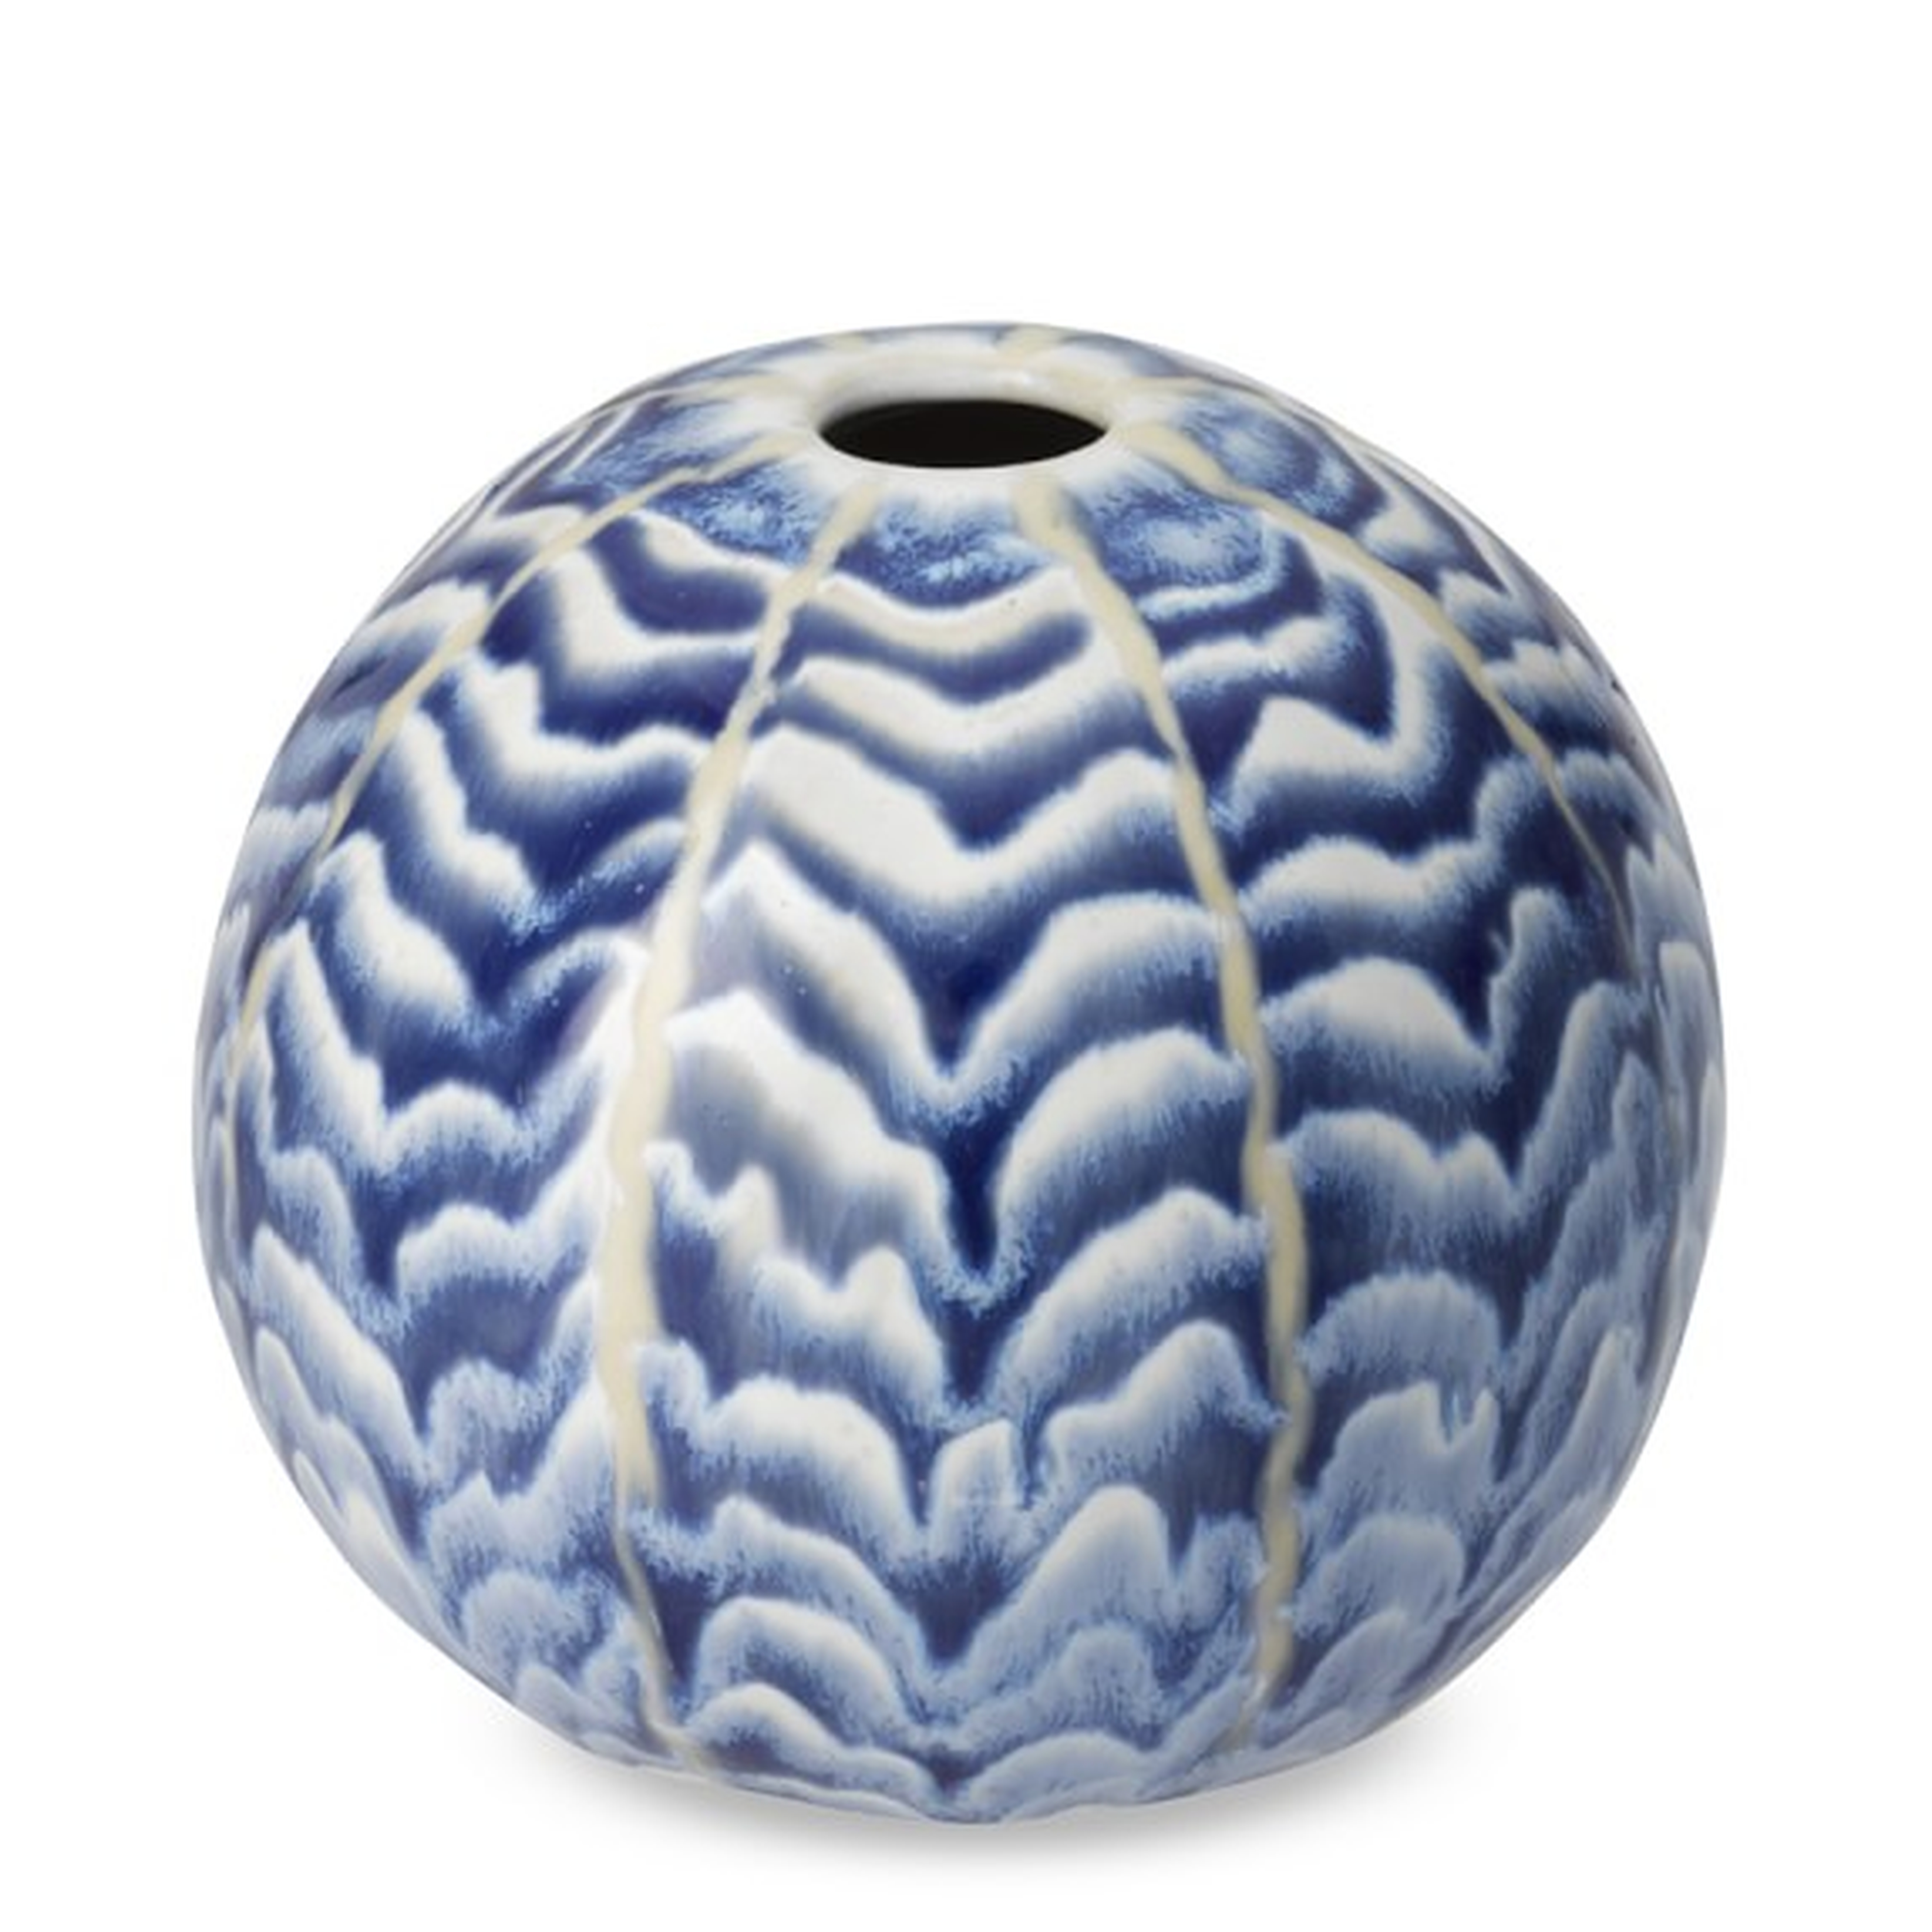 Ceramic Herringbone Round Vase - Williams Sonoma Home